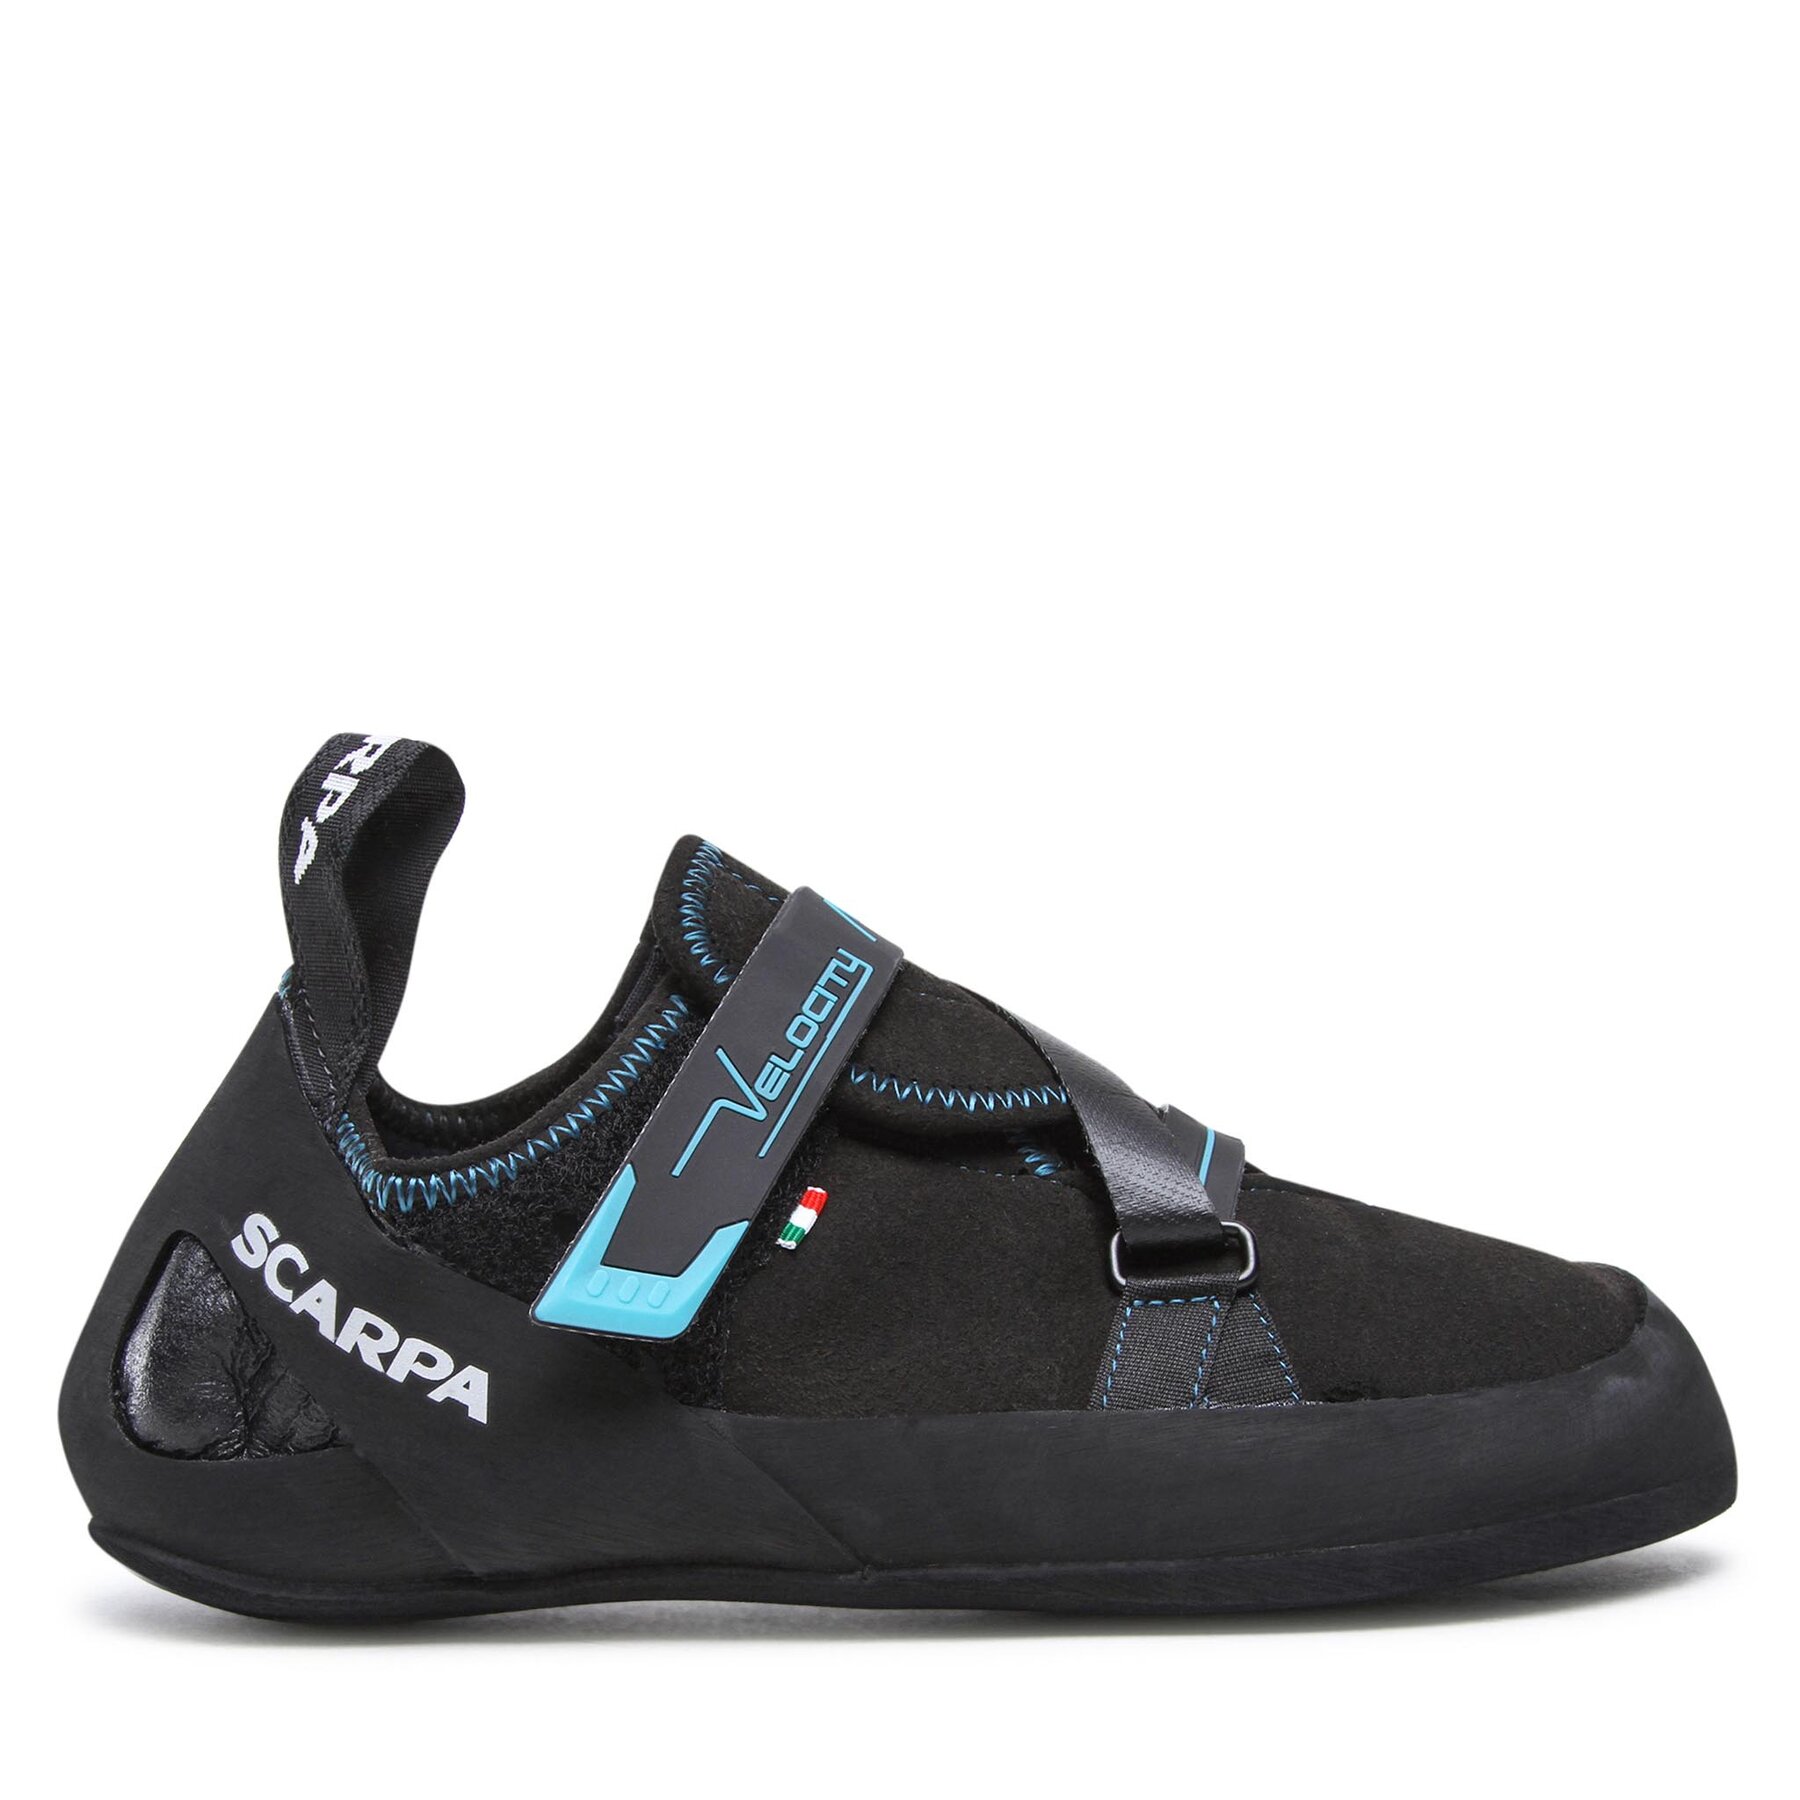 Čevlji Scarpa Velocity 70041-001 Black/Ottanio